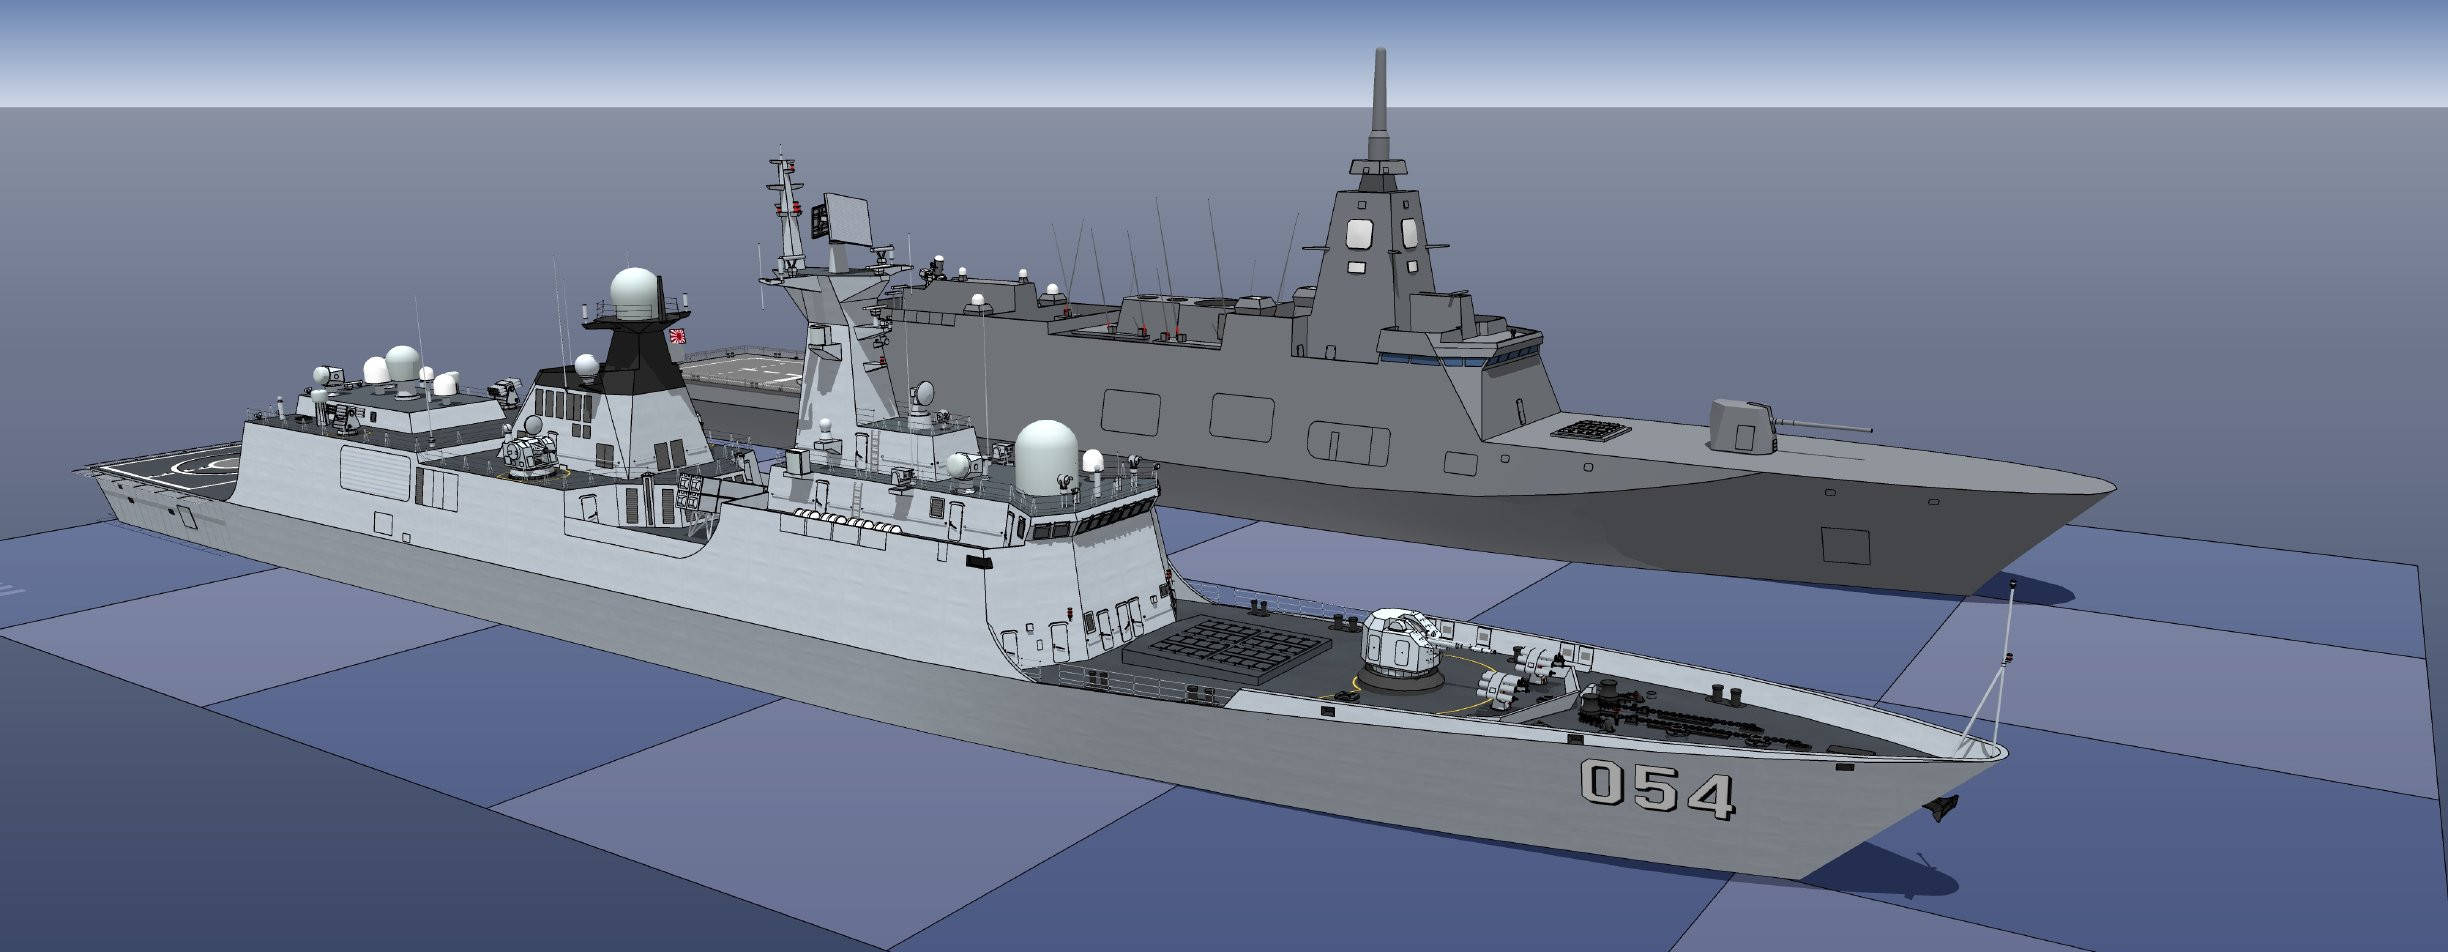 海自054a来了新一代30ffm护卫舰二号舰下水建造数量将达22艘